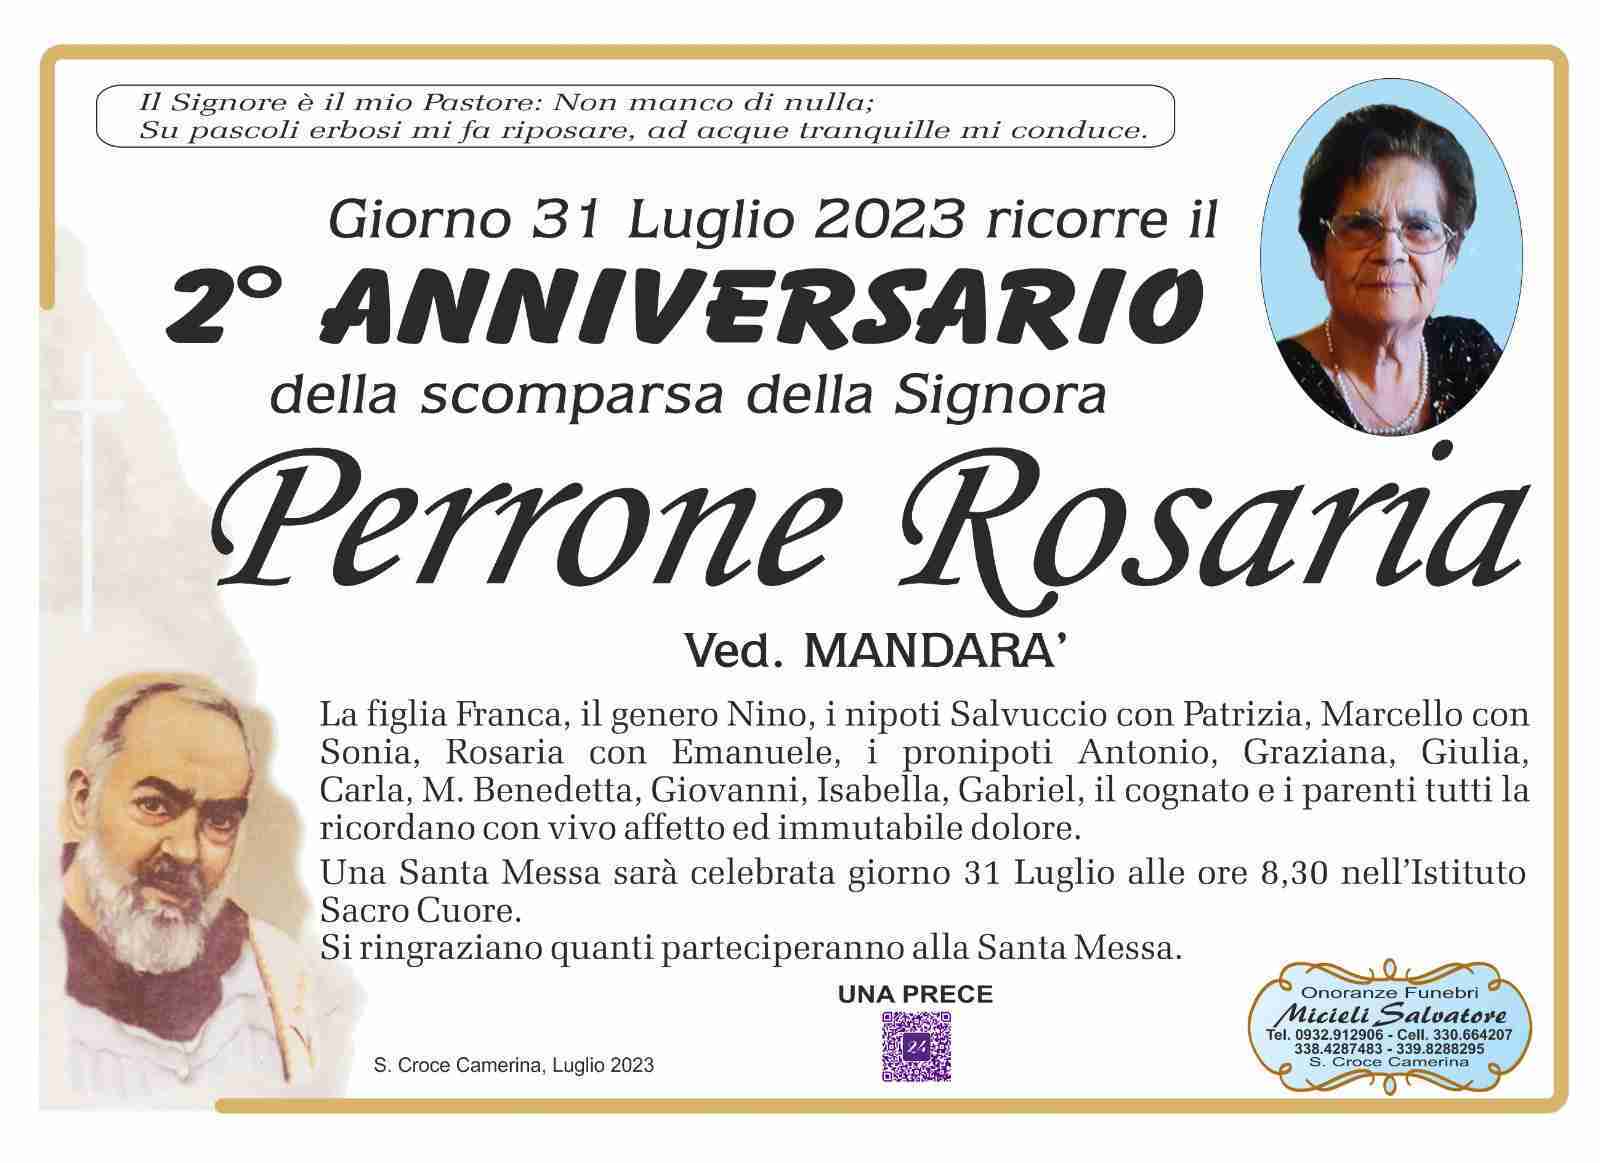 Rosaria Perrone